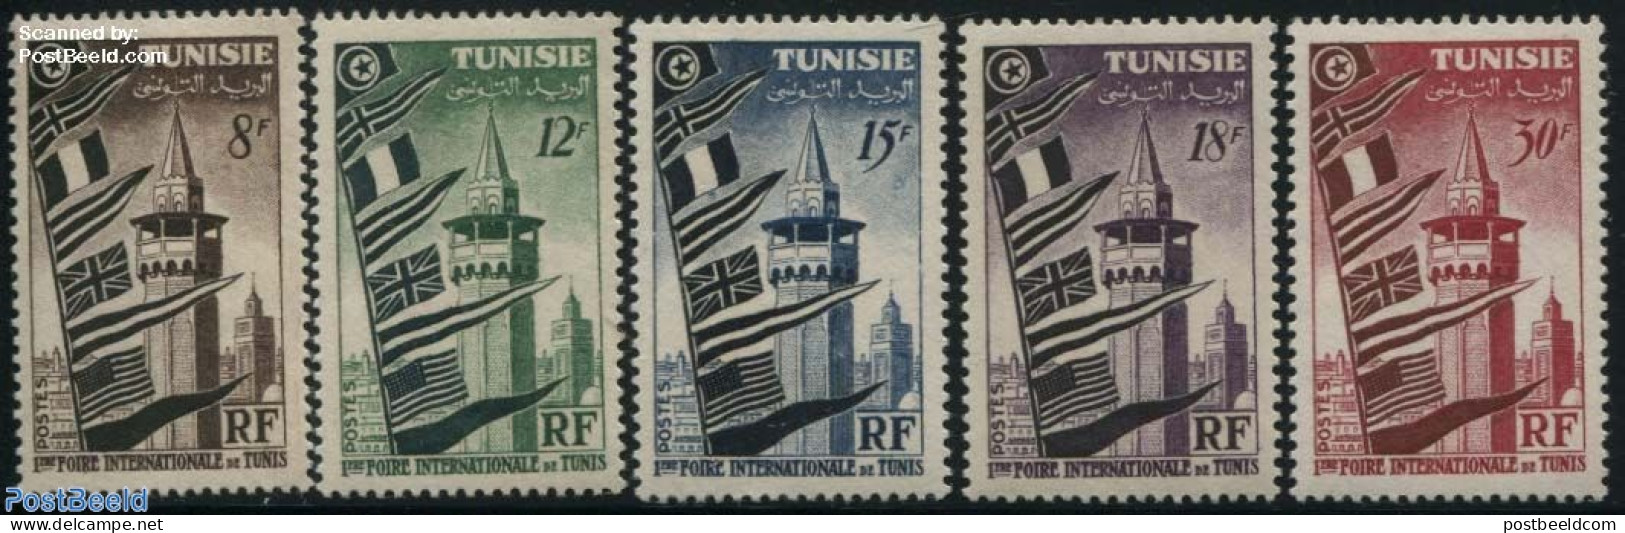 Tunisia 1953 International Fair Tunis 5v, Mint NH, History - Various - Flags - Export & Trade - Fabriken Und Industrien